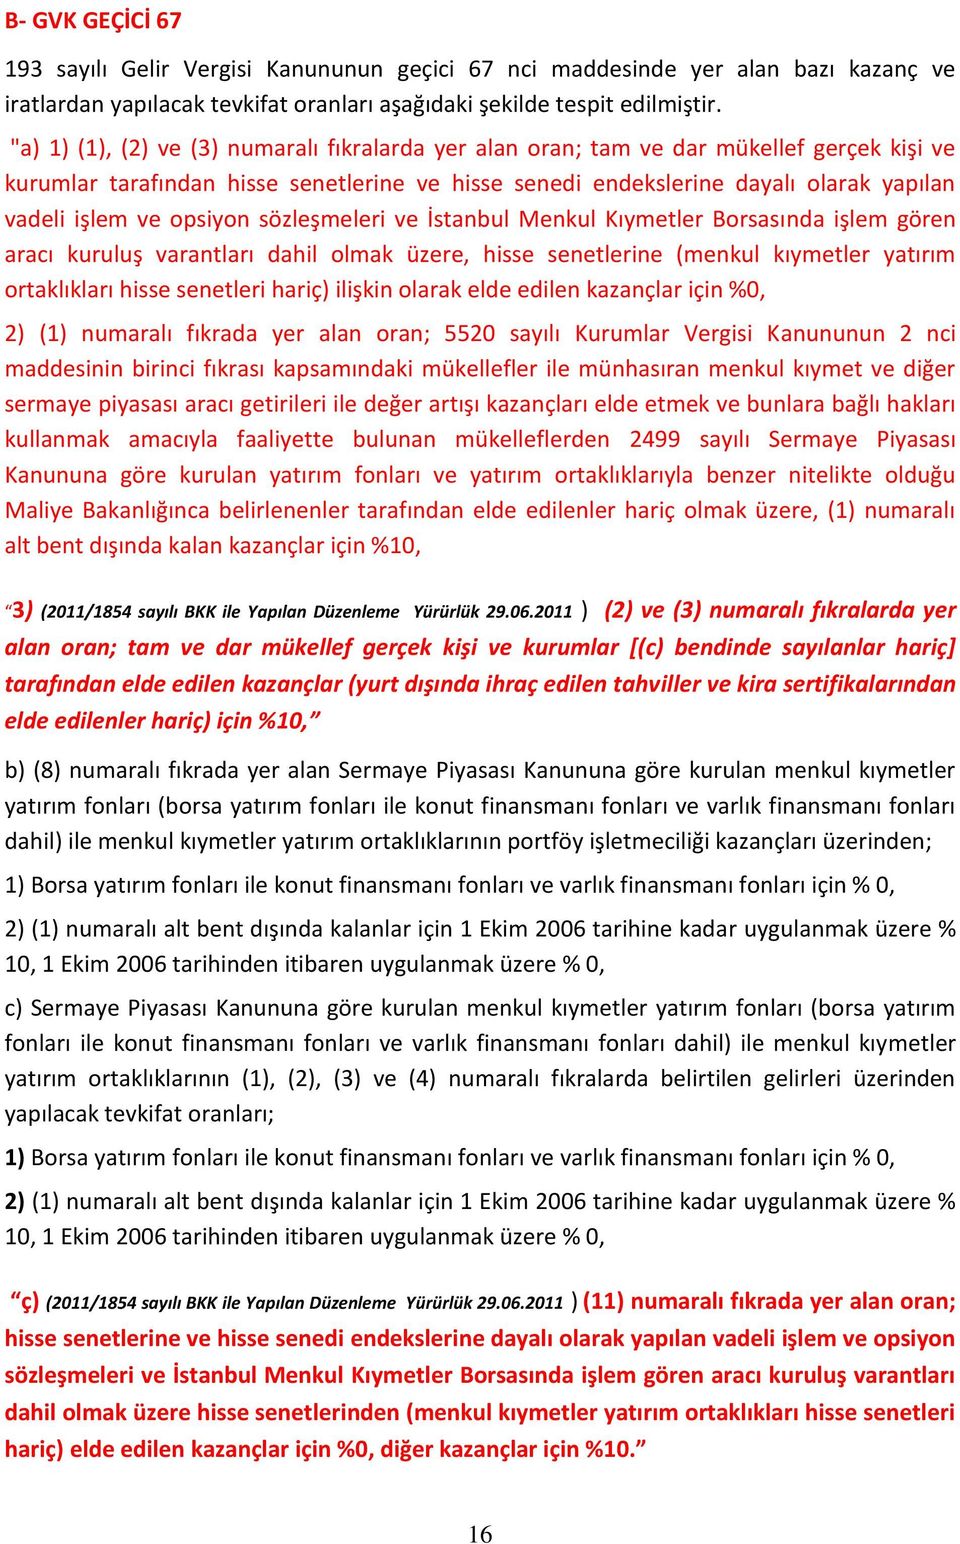 opsiyon sözleşmeleri ve İstanbul Menkul Kıymetler Borsasında işlem gören aracı kuruluş varantları dahil olmak üzere, hisse senetlerine (menkul kıymetler yatırım ortaklıkları hisse senetleri hariç)